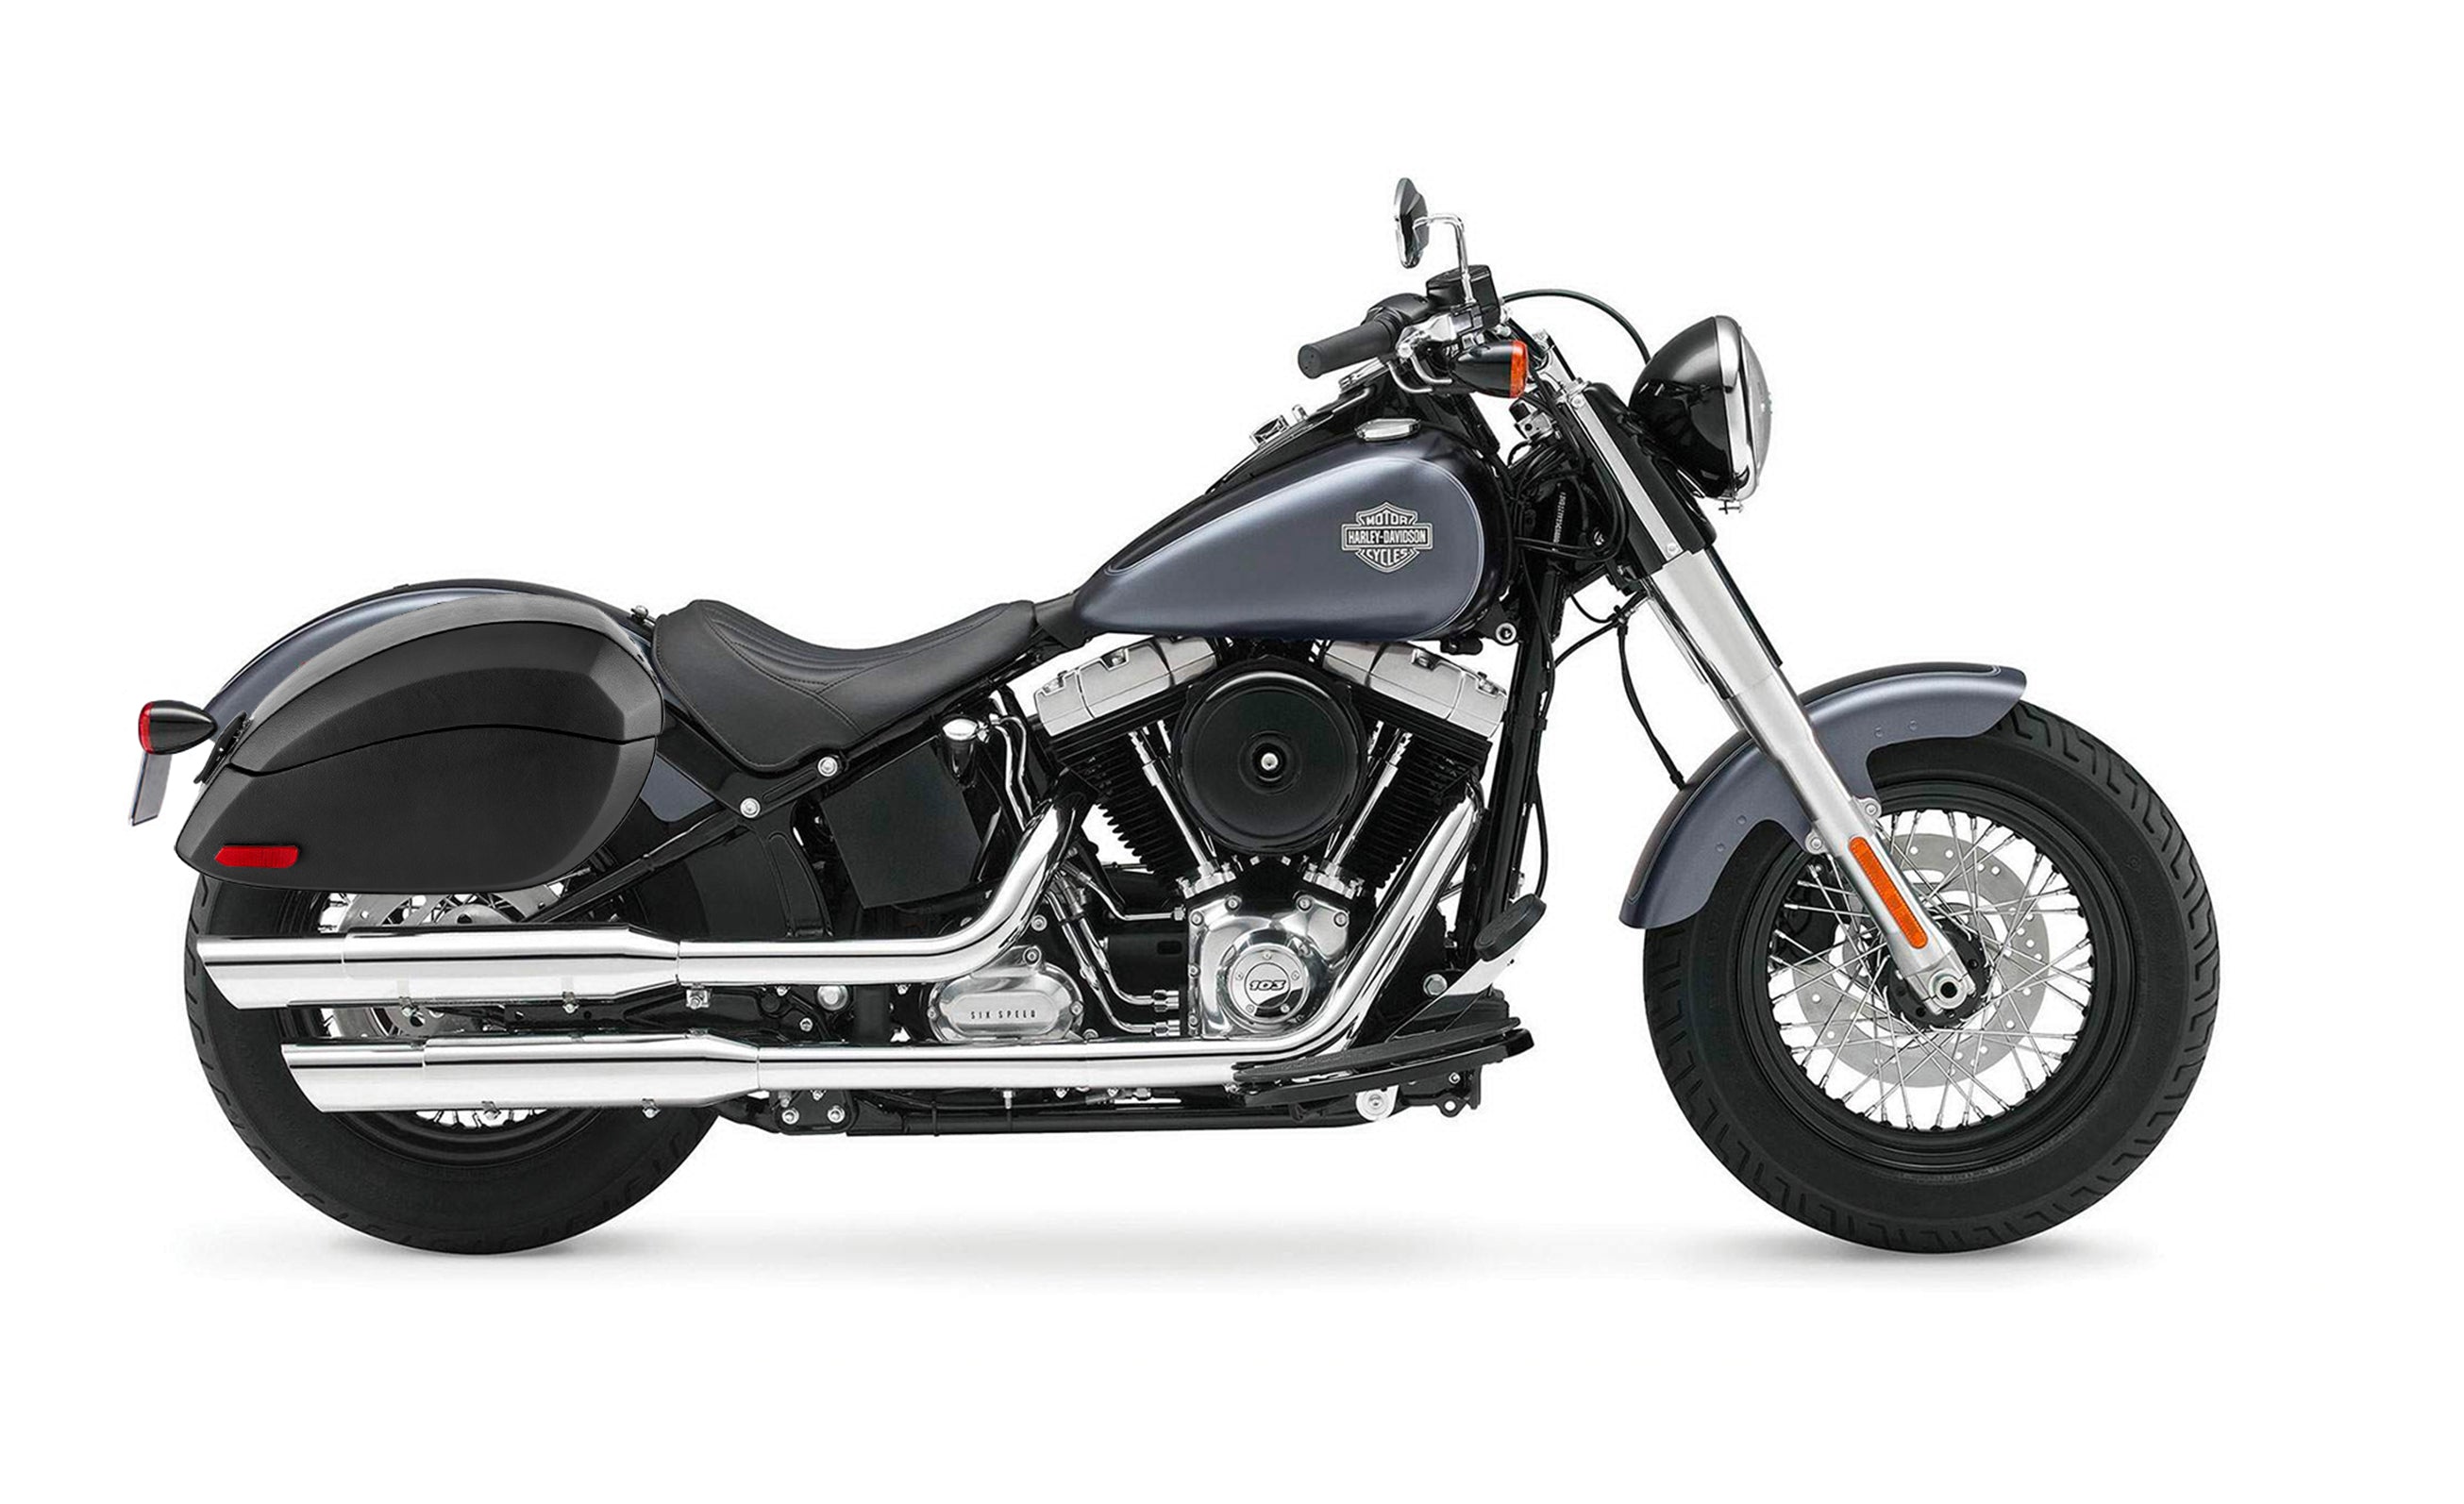 28L - Phantom Large Leather Wrapped Motorcycle Hard Saddlebags For Harley Softail Slim FLS on Bike Photo @expand